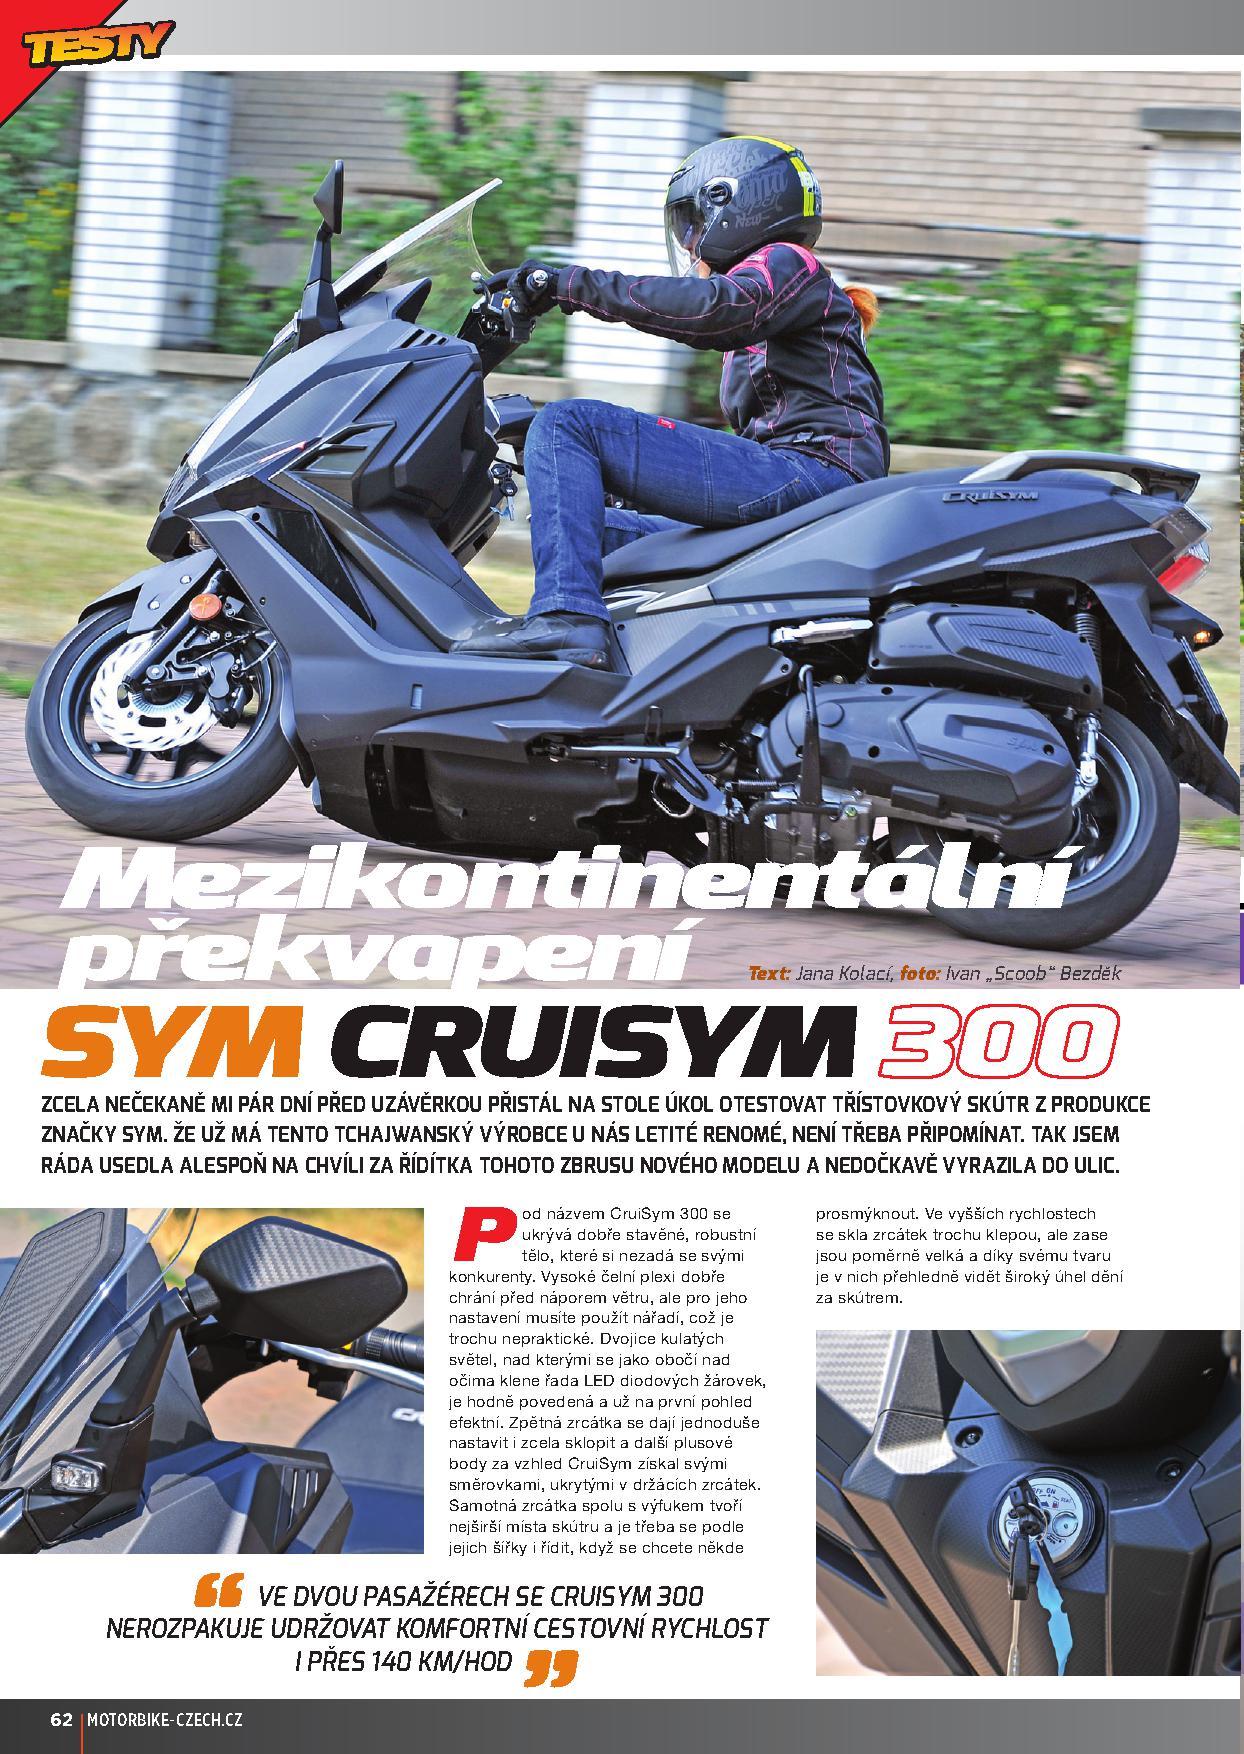 Novinka Cruisym otestována – MotorSYM Motor – Skútry, motorky, čtyřkolky